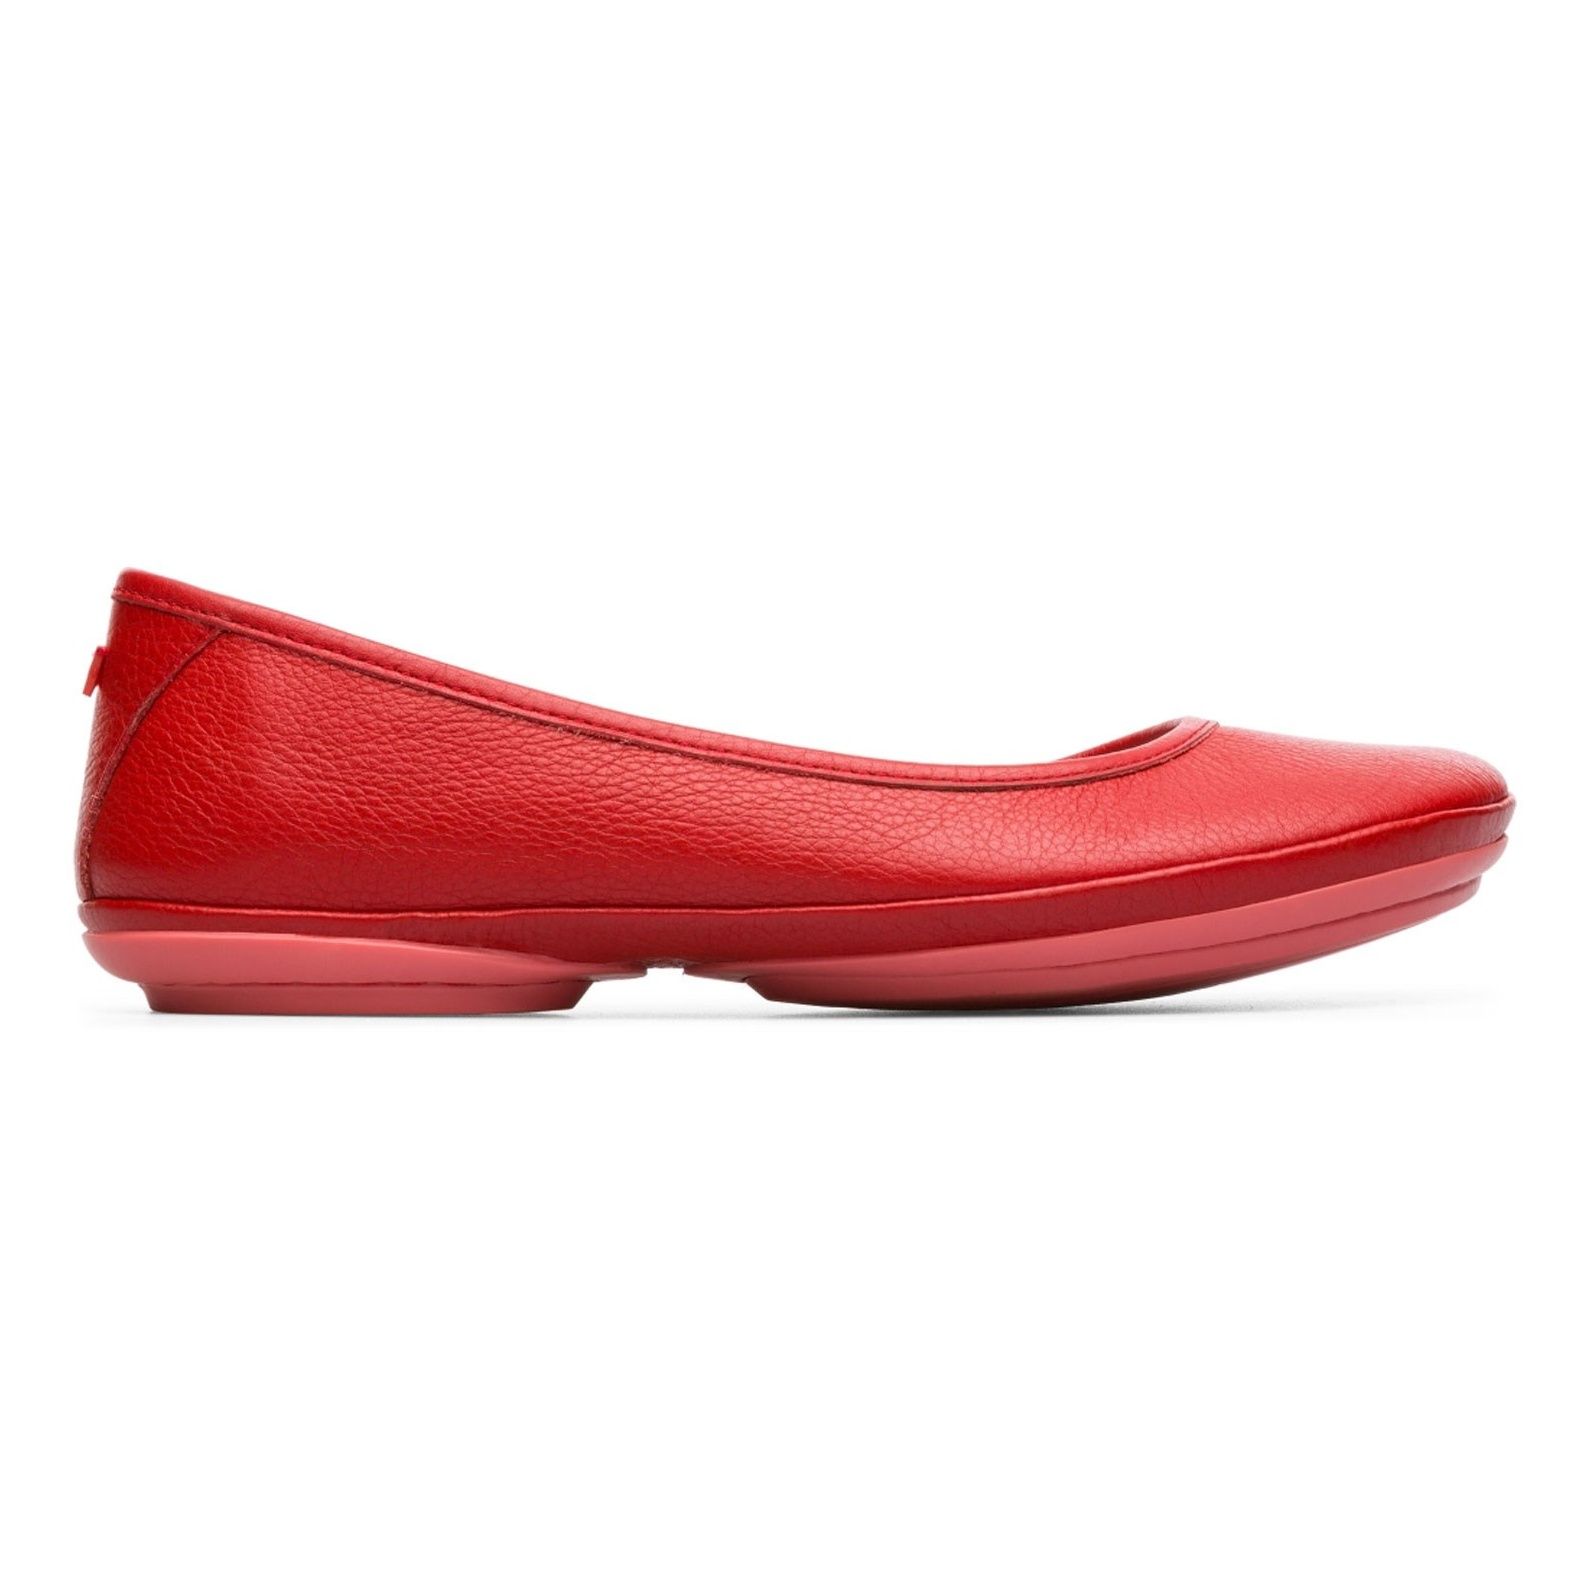 کفش تخت چرم زنانه Right Nina - کمپر - قرمز - 2